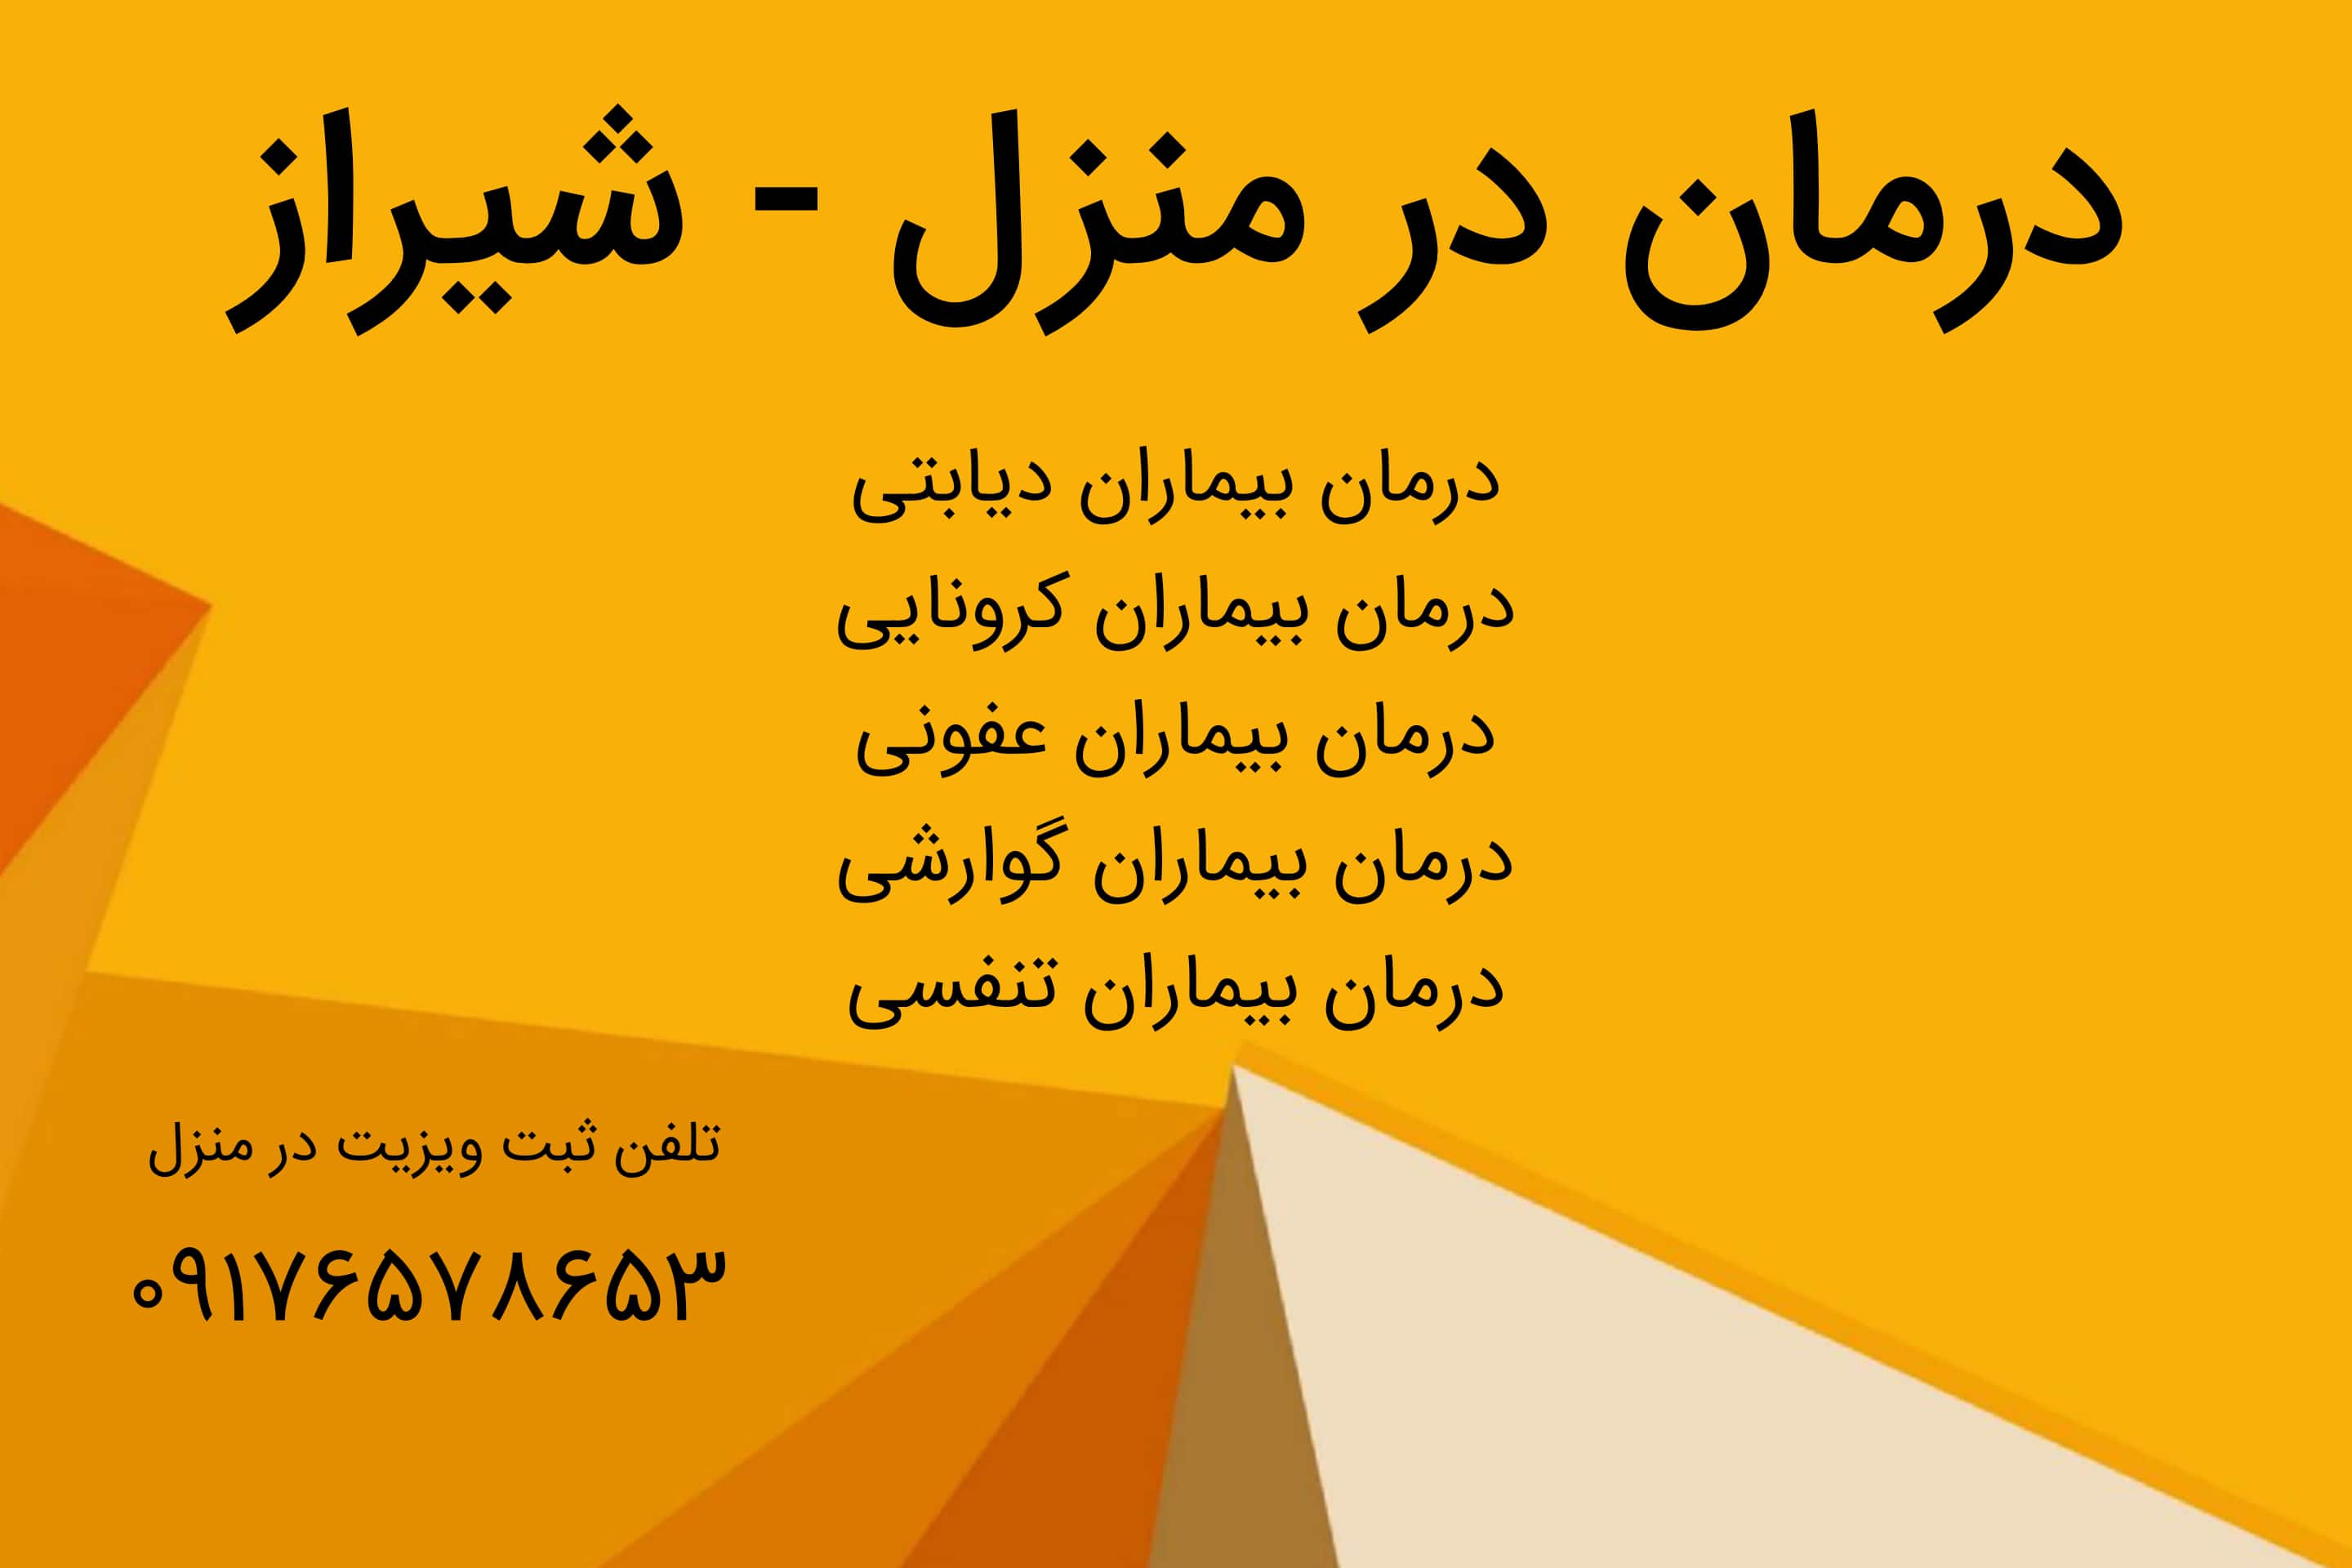 لیست خدمات پرستاری و پزشکی در منزل در شیراز